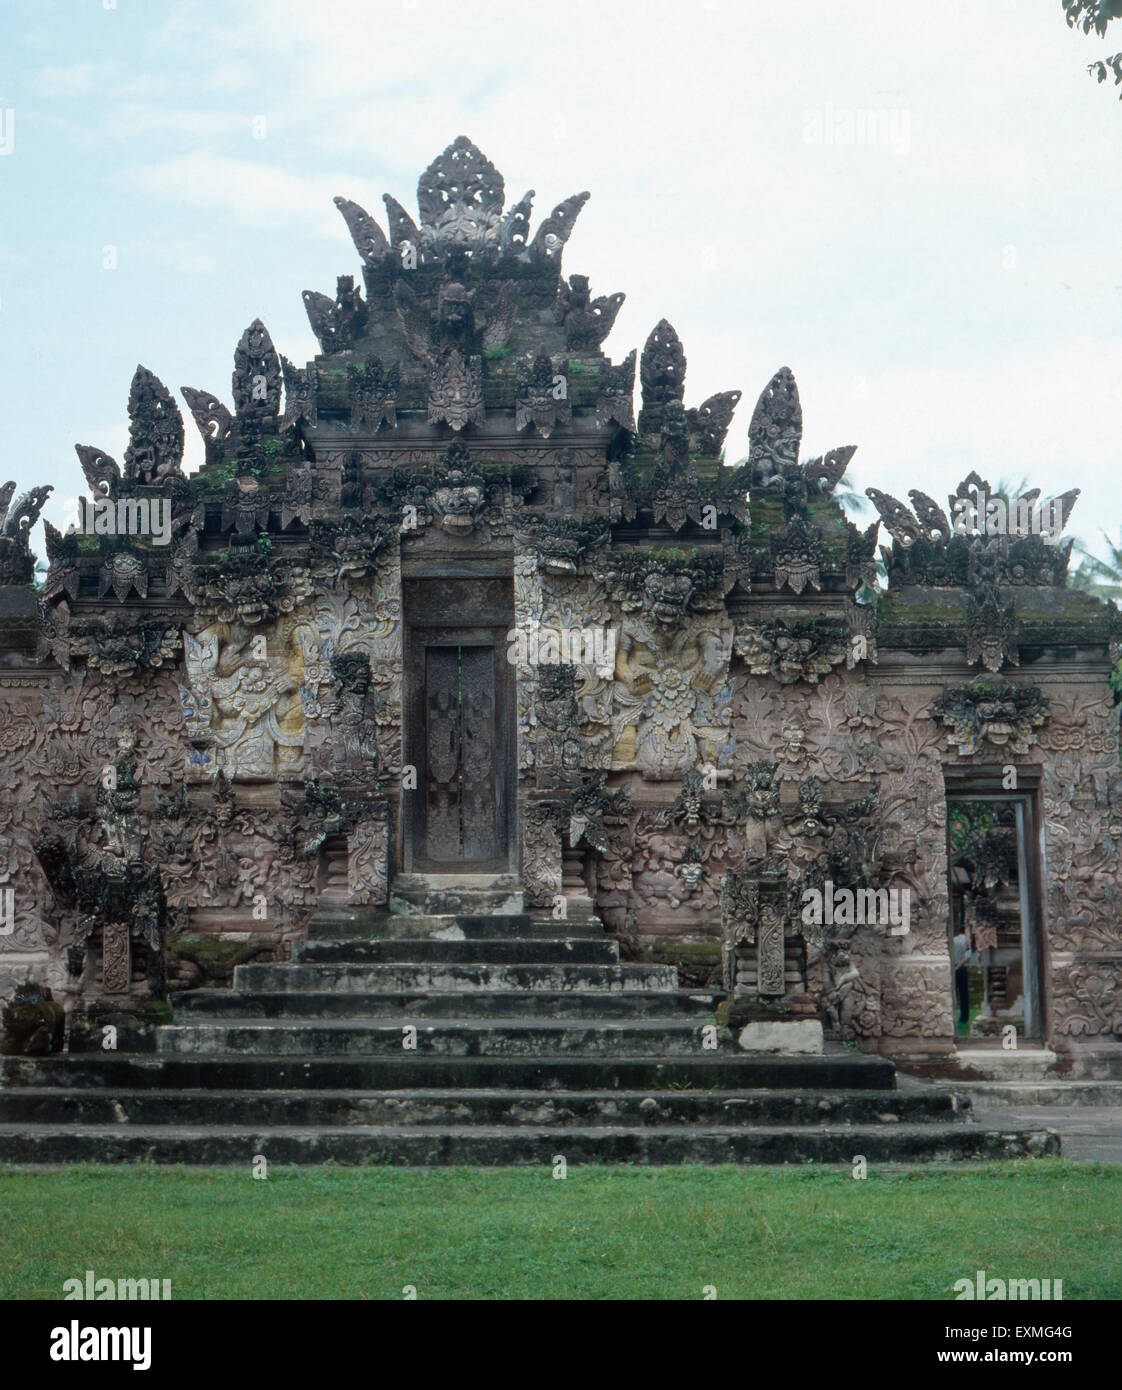 Eine Besichtigung des Tempels Pura Beji in Singaraja, Bali, Indonesien 1982. Visitation of the Tempel Pura Beji in Singaraja, Bali, Indonesia 1982. Stock Photo